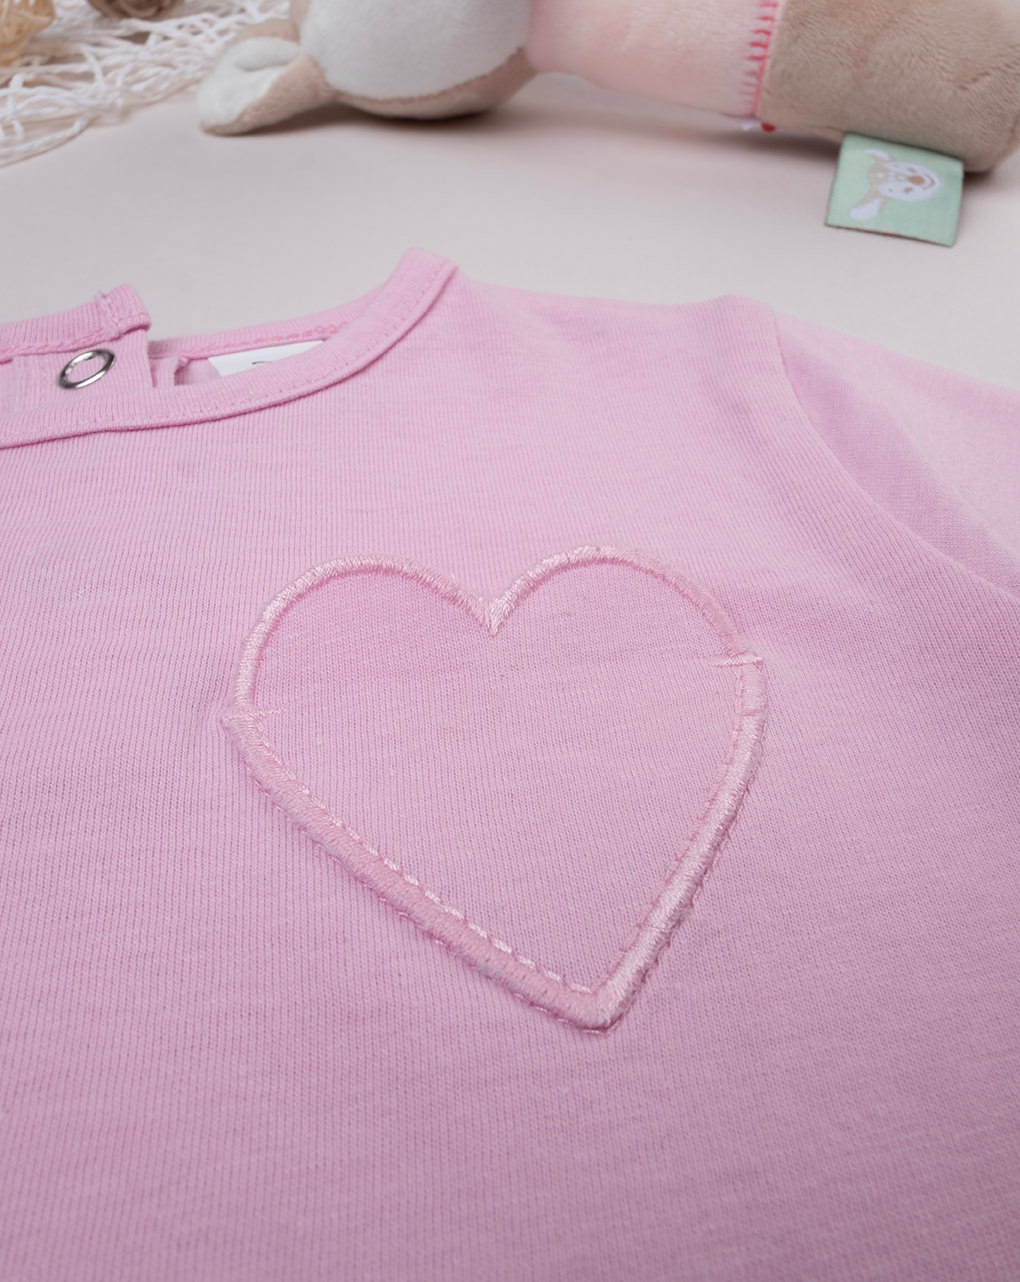 βρεφικό t-shirt ροζ με patch καρδούλα για κορίτσι - Prénatal